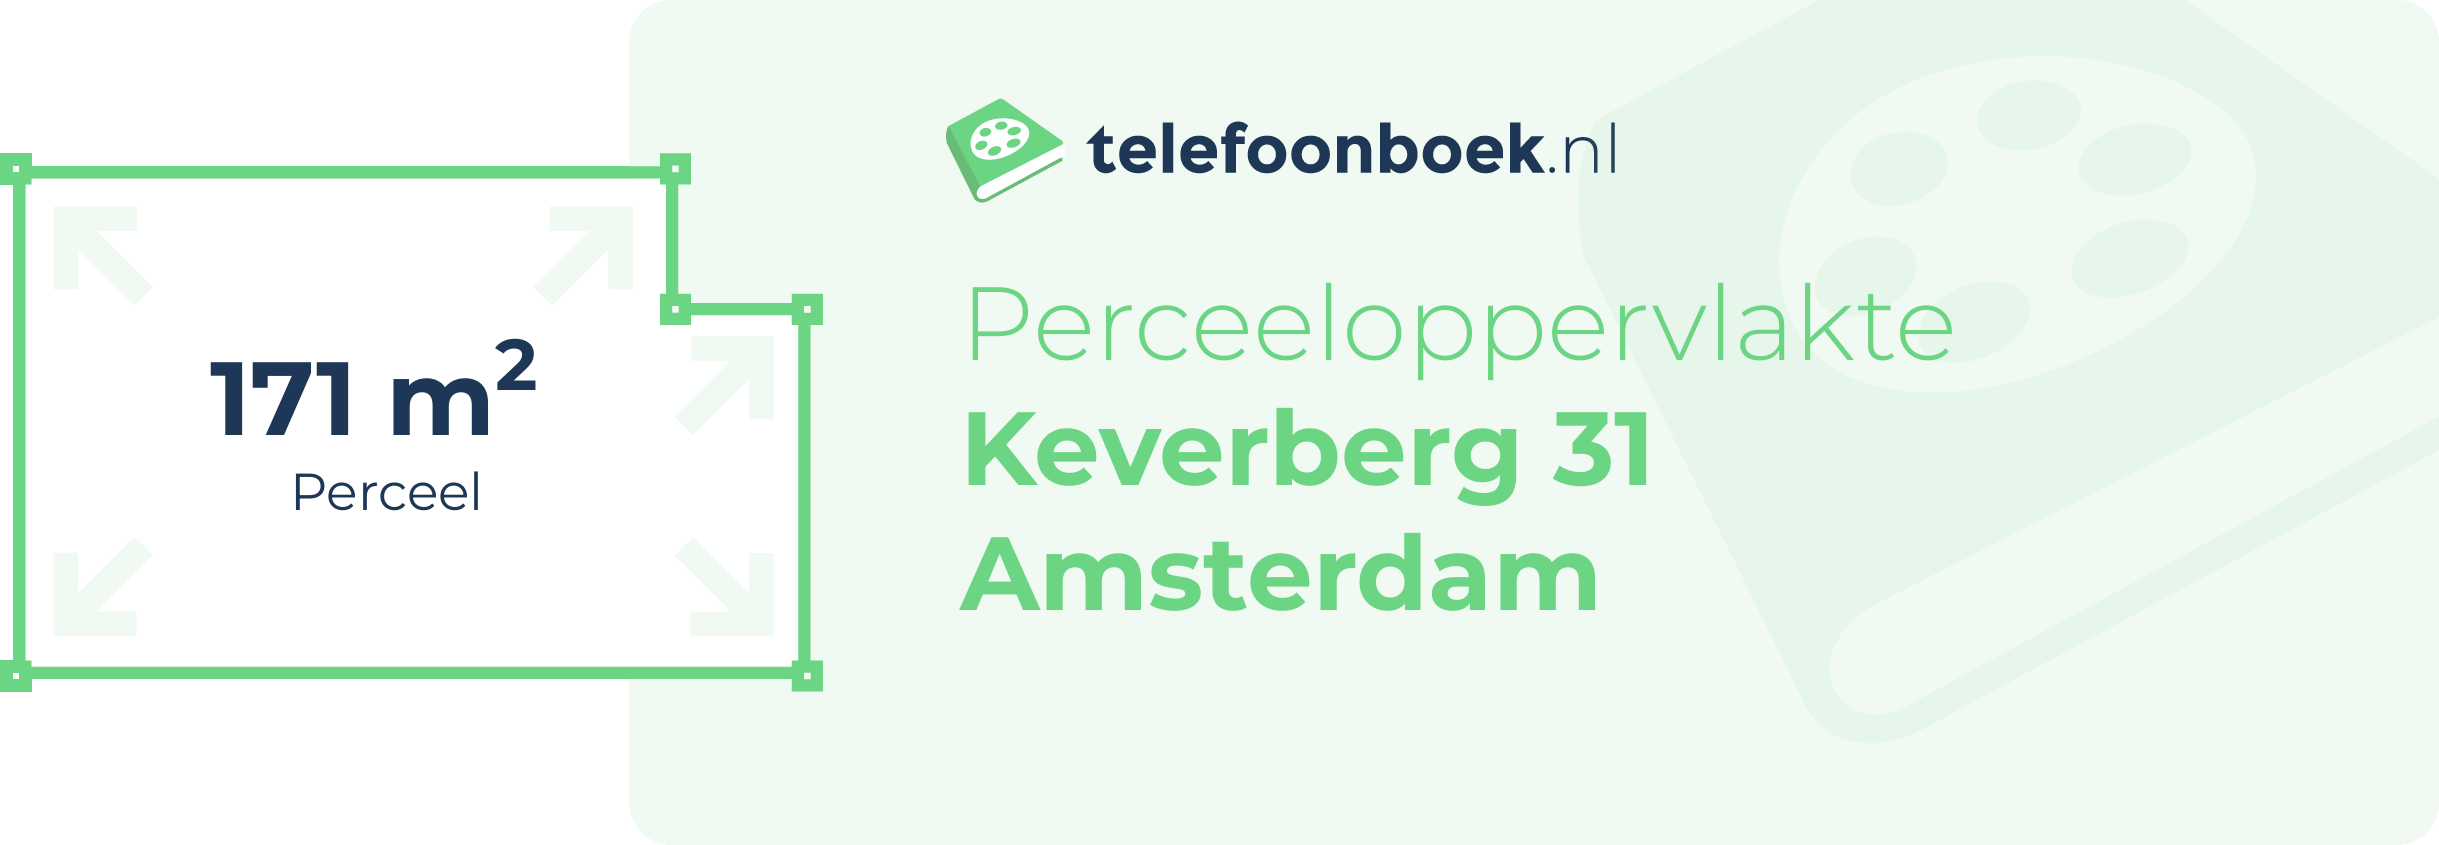 Perceeloppervlakte Keverberg 31 Amsterdam